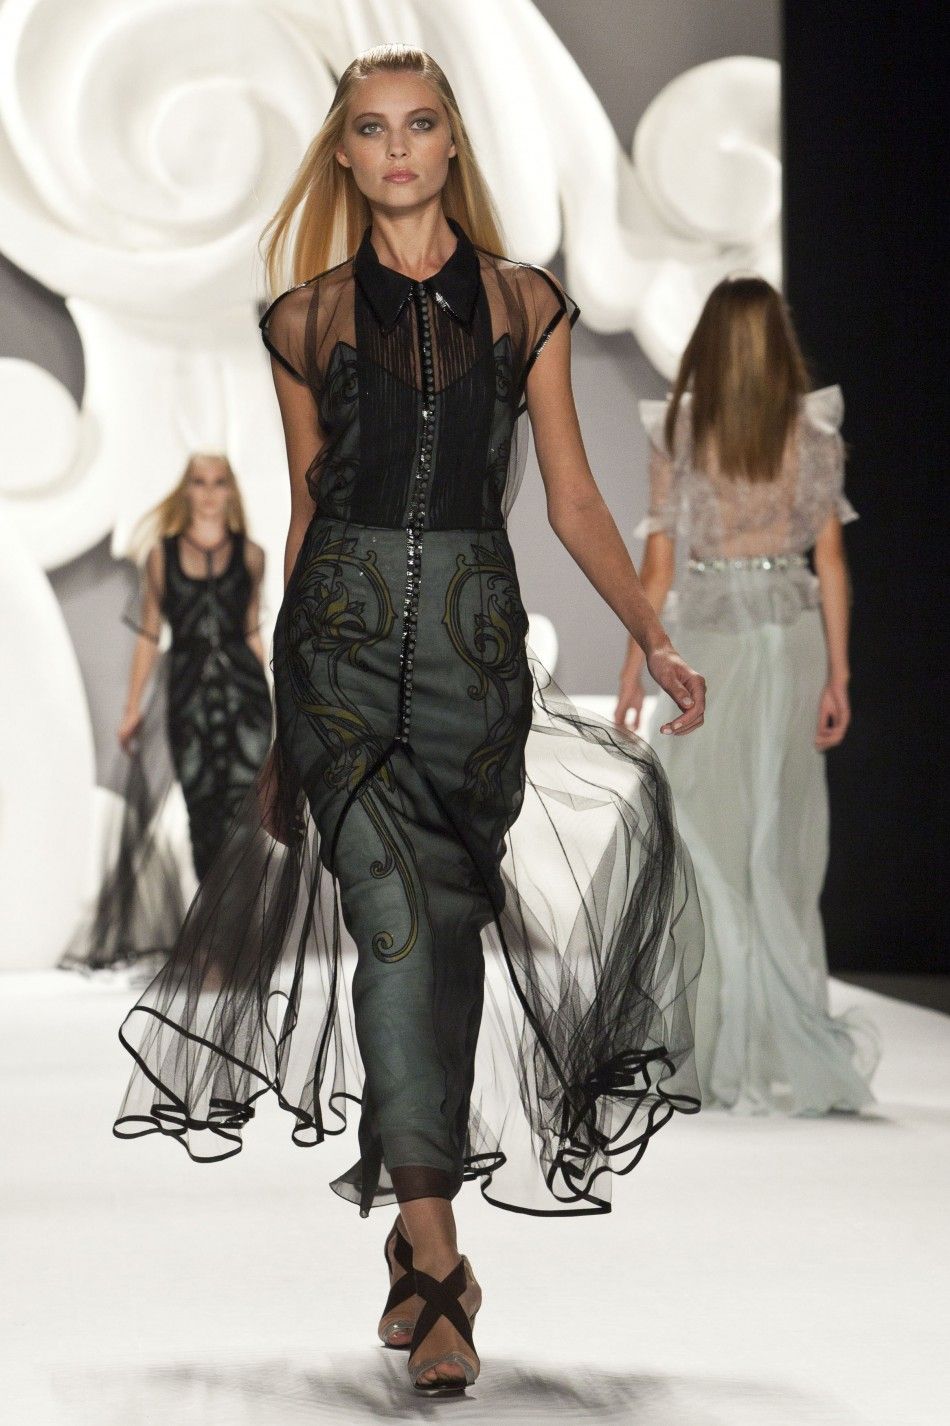 Carolina Herrera Spring 2013 at New York Fashion Week